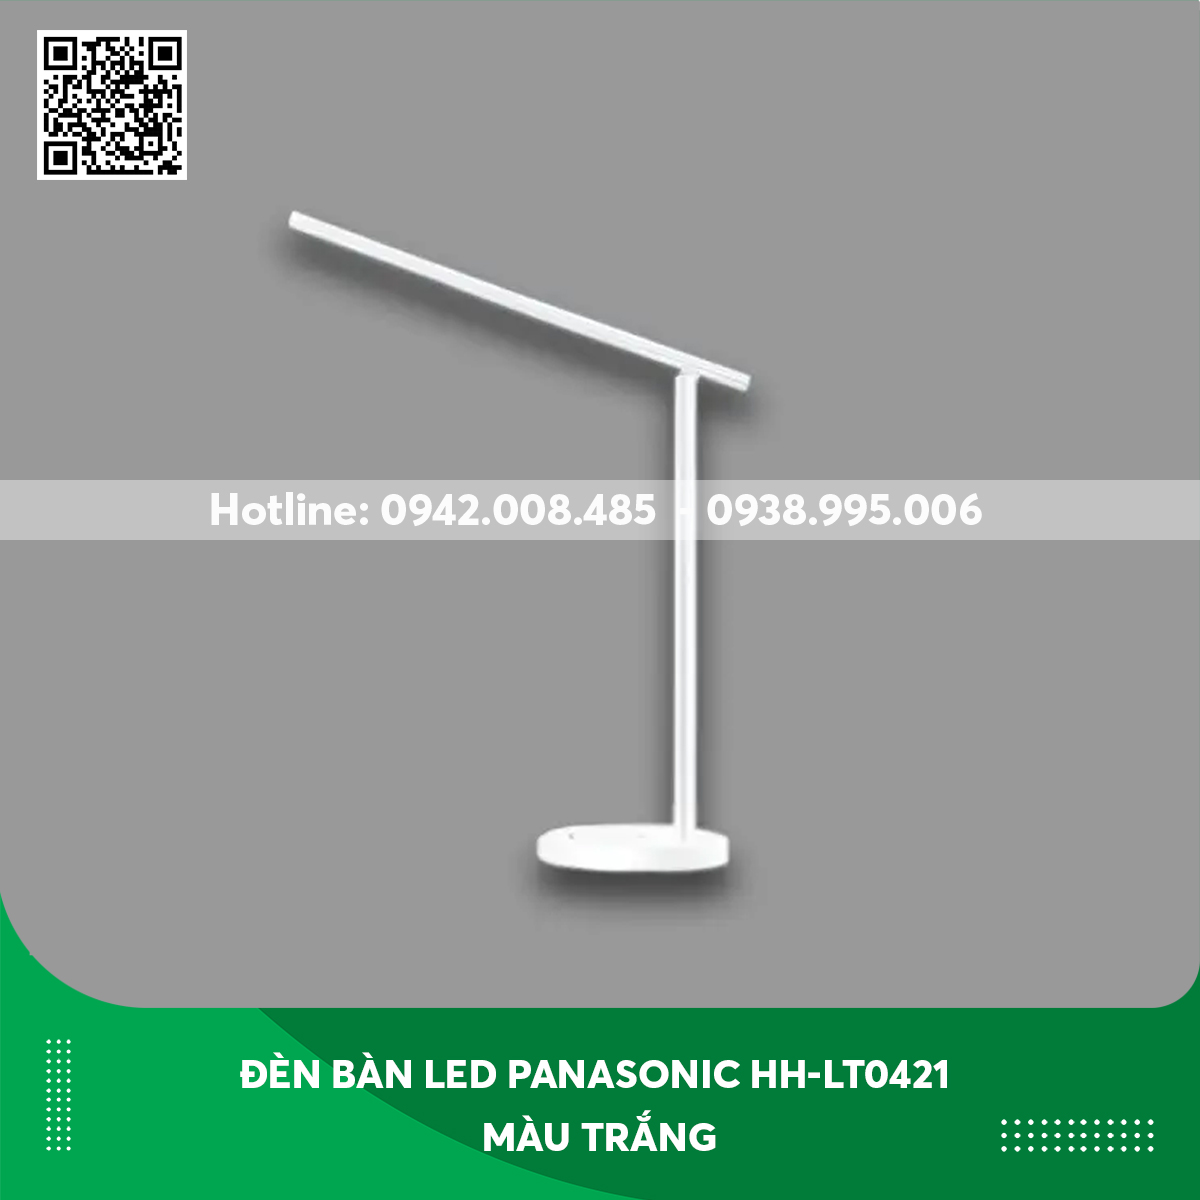 Đèn bàn LED Panasonic HH-LT0421 màu trắng